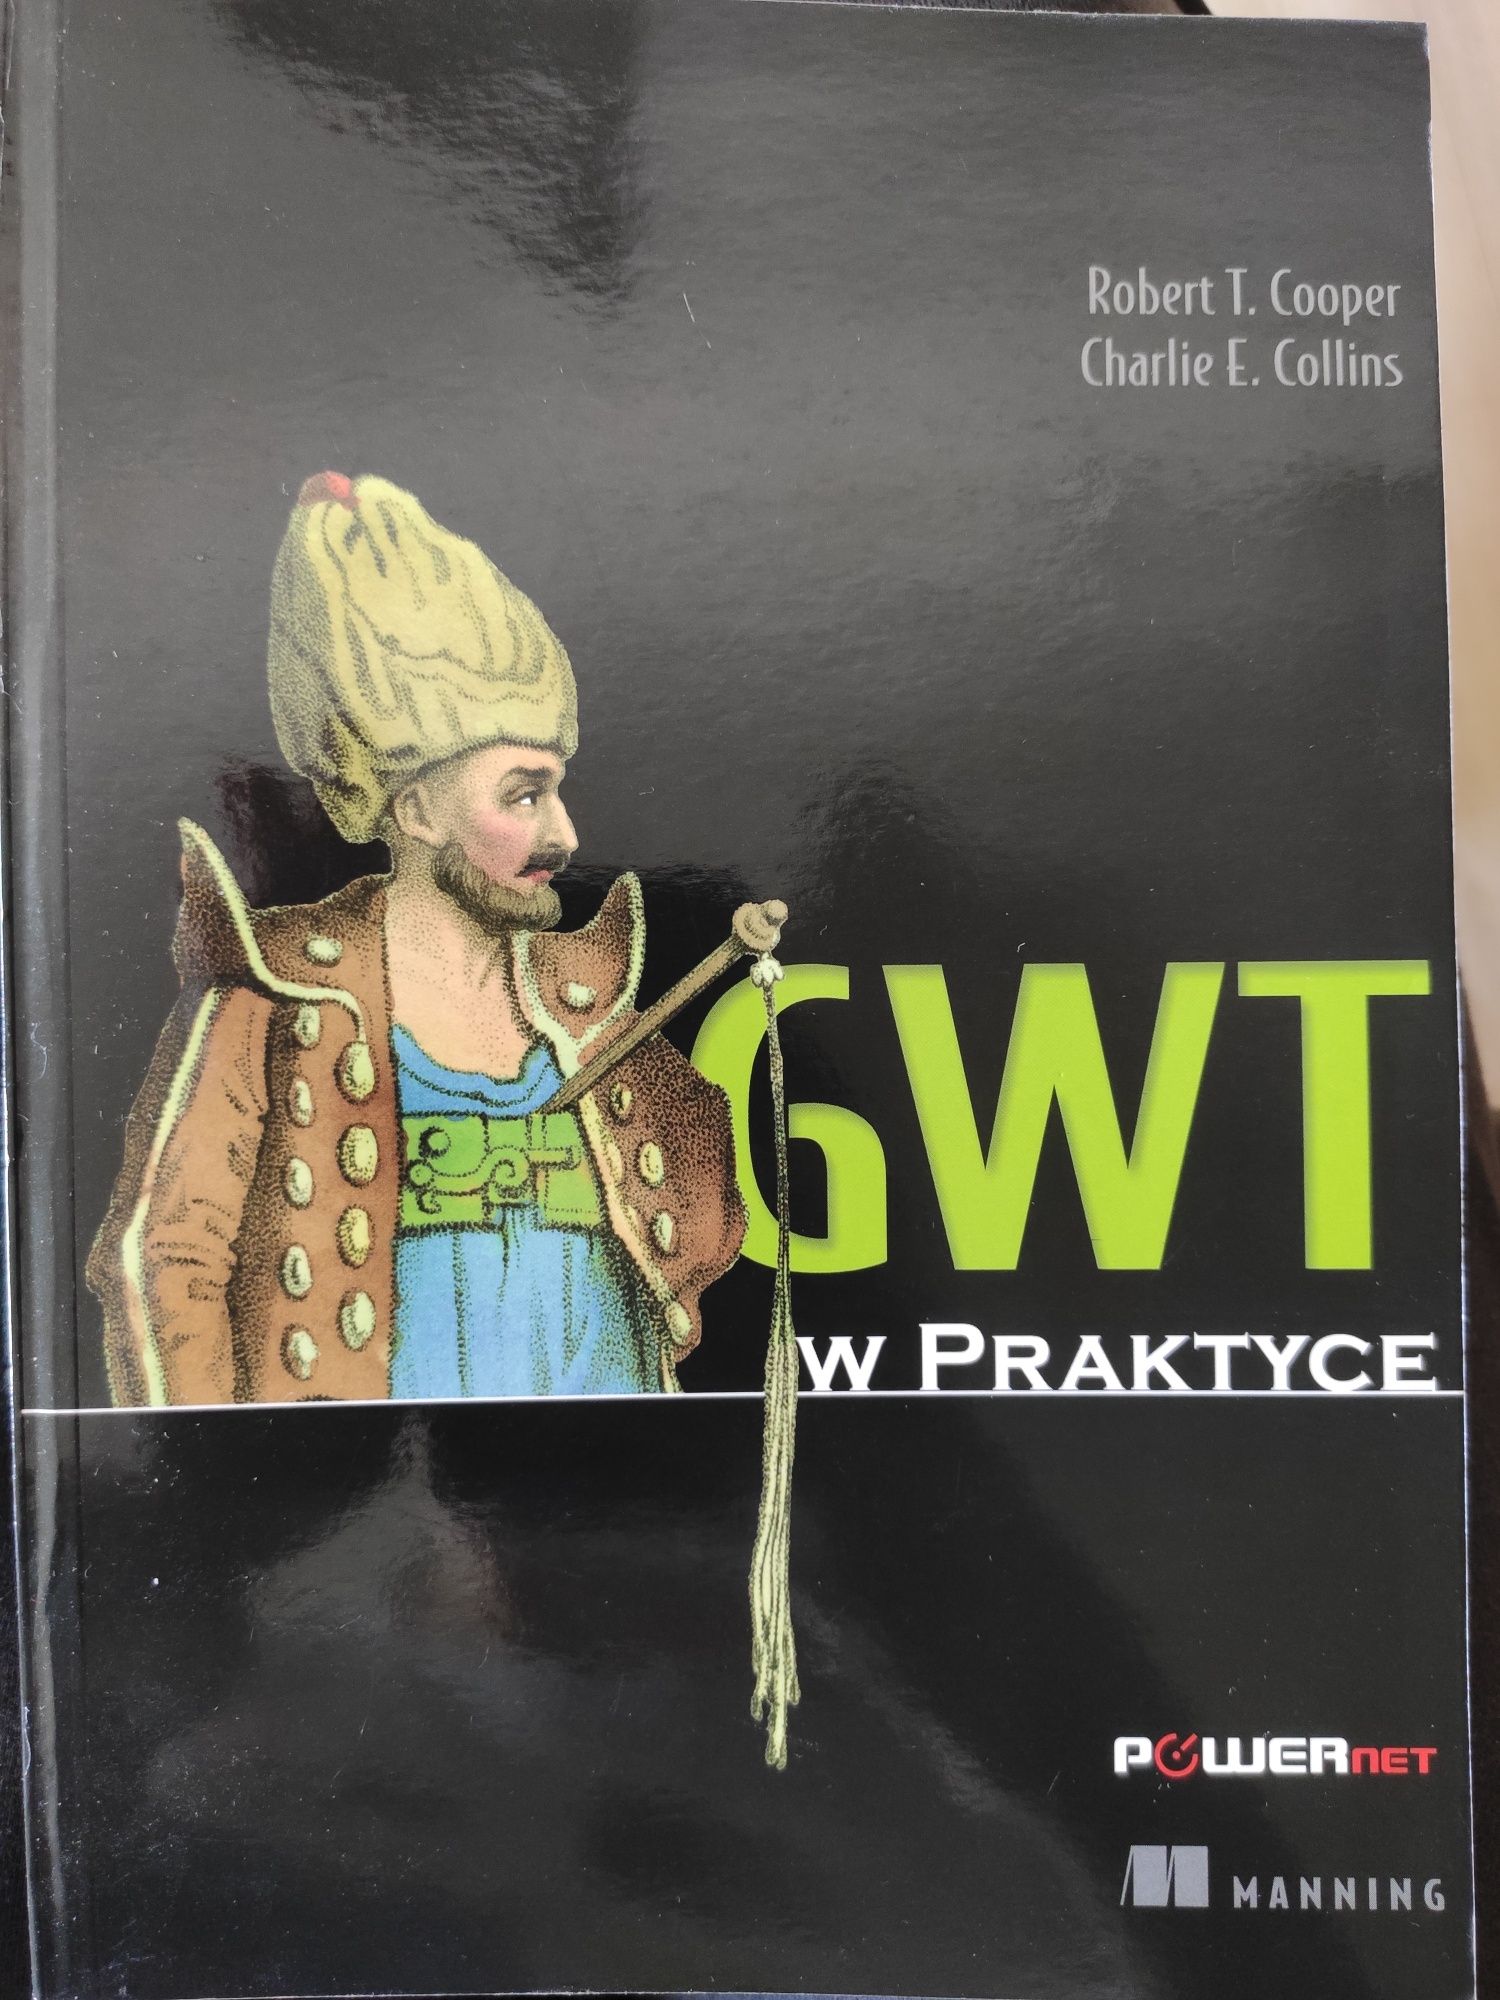 GWT w praktyce, wyd. Powernet